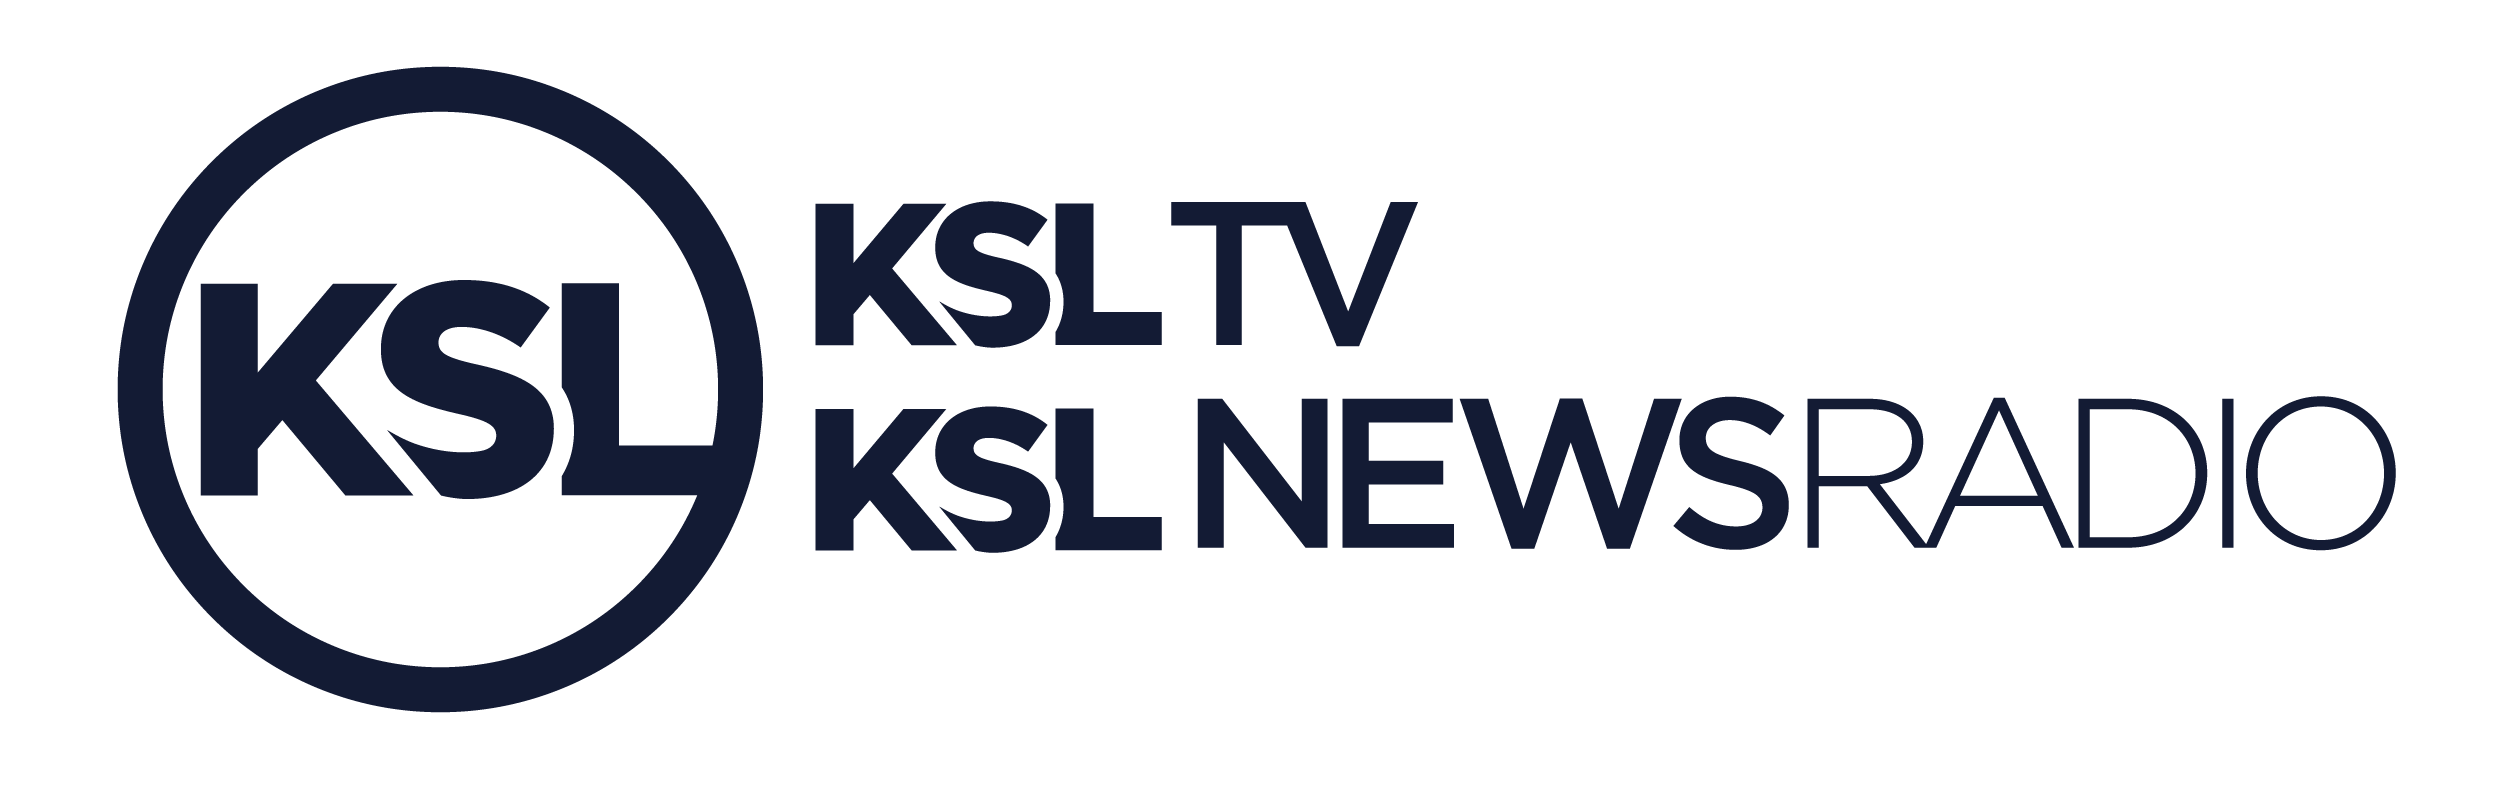 KSL-TV-NR-dark-blue